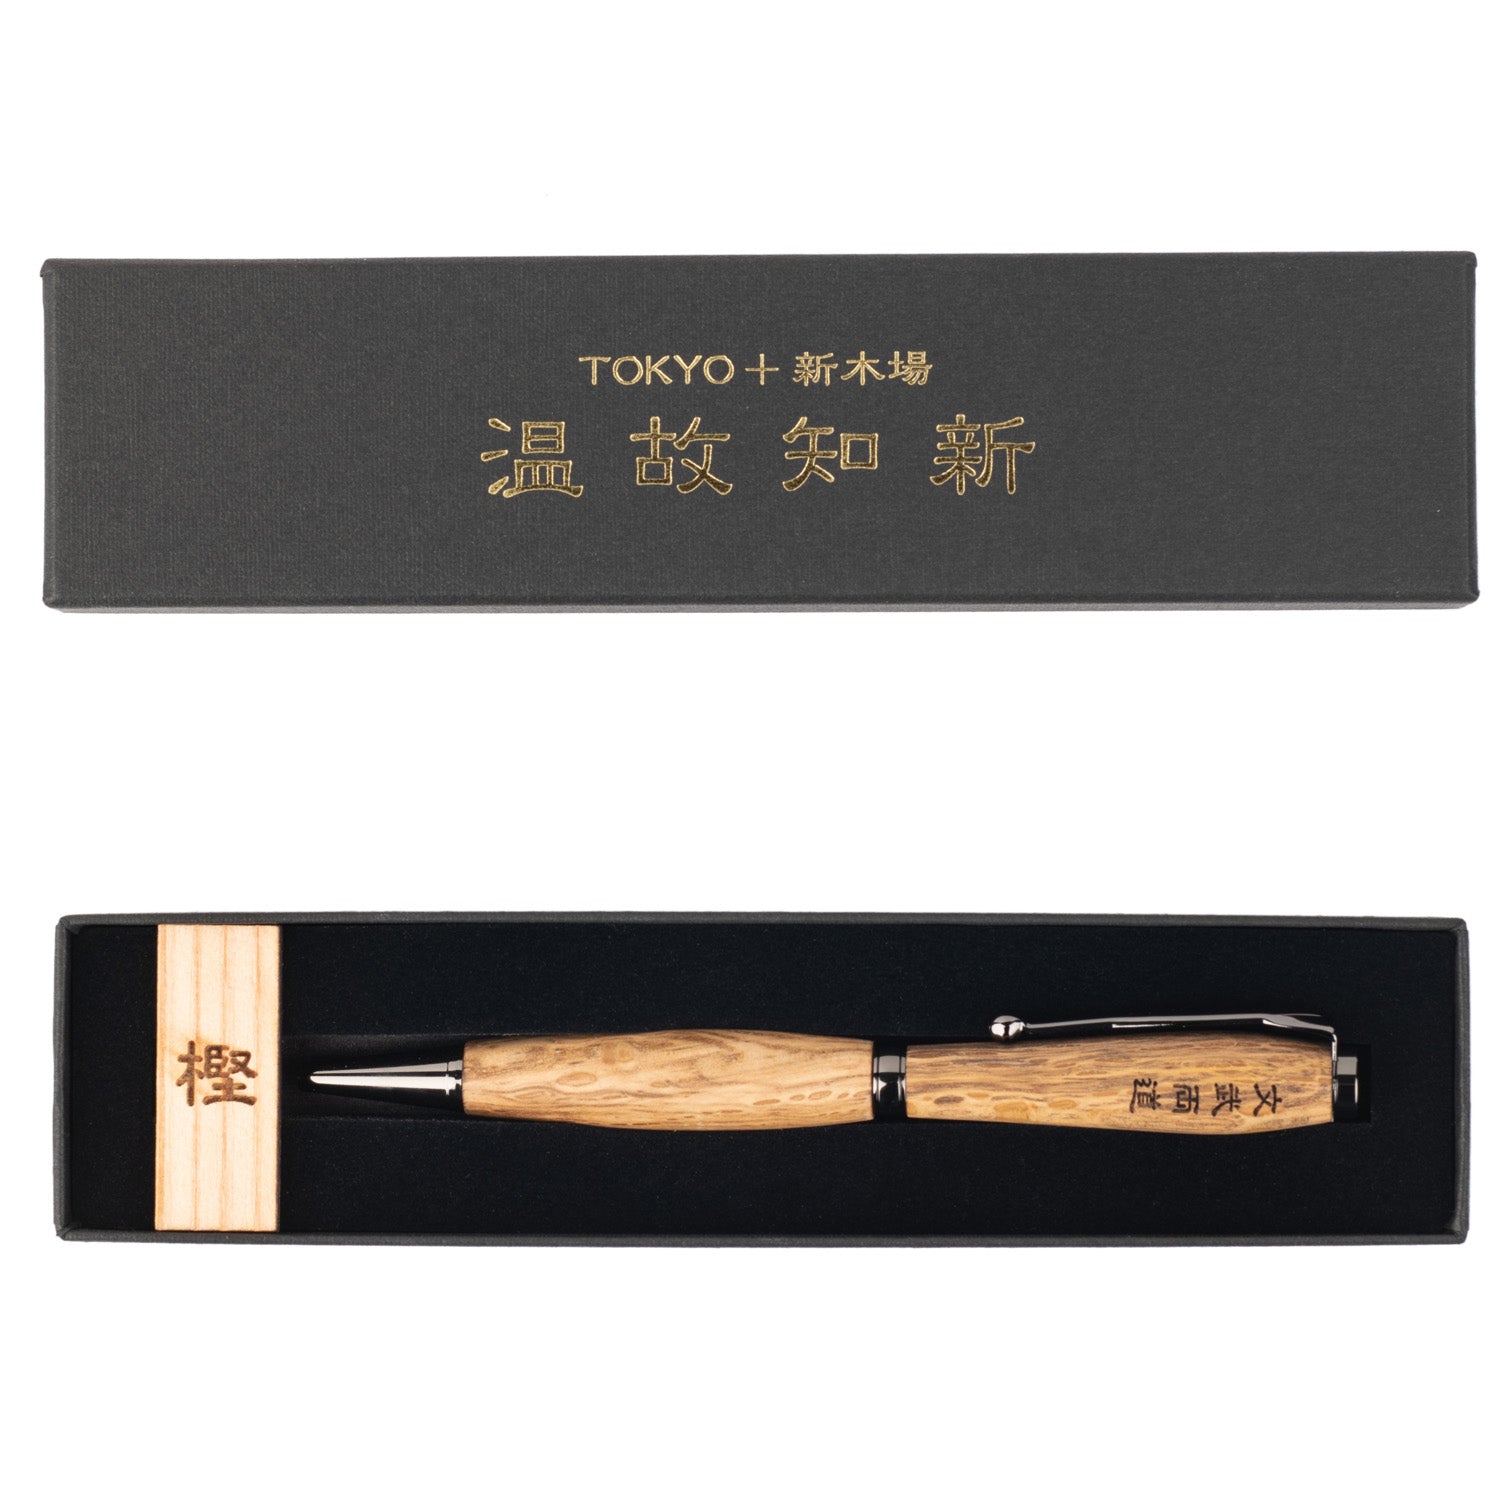 Premium Oak Wood Black Japanese Ballpoint Pen in gift box